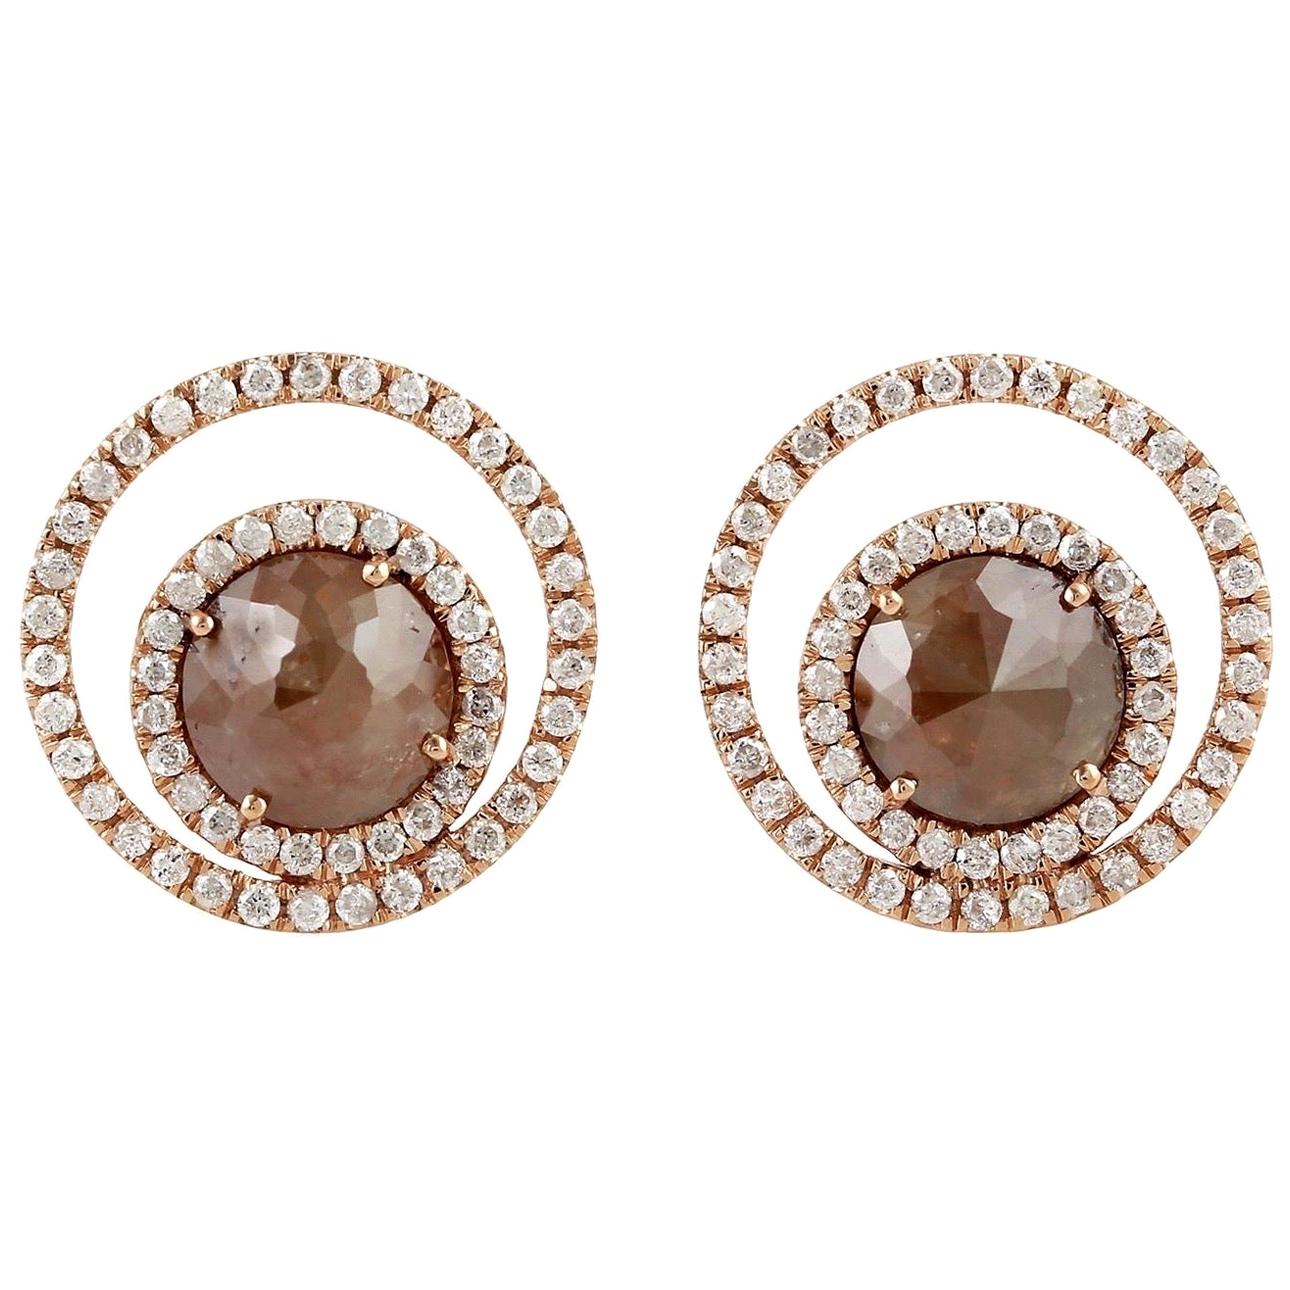 Fancy Diamond 18 Karat Gold Galaxy Stud Earrings